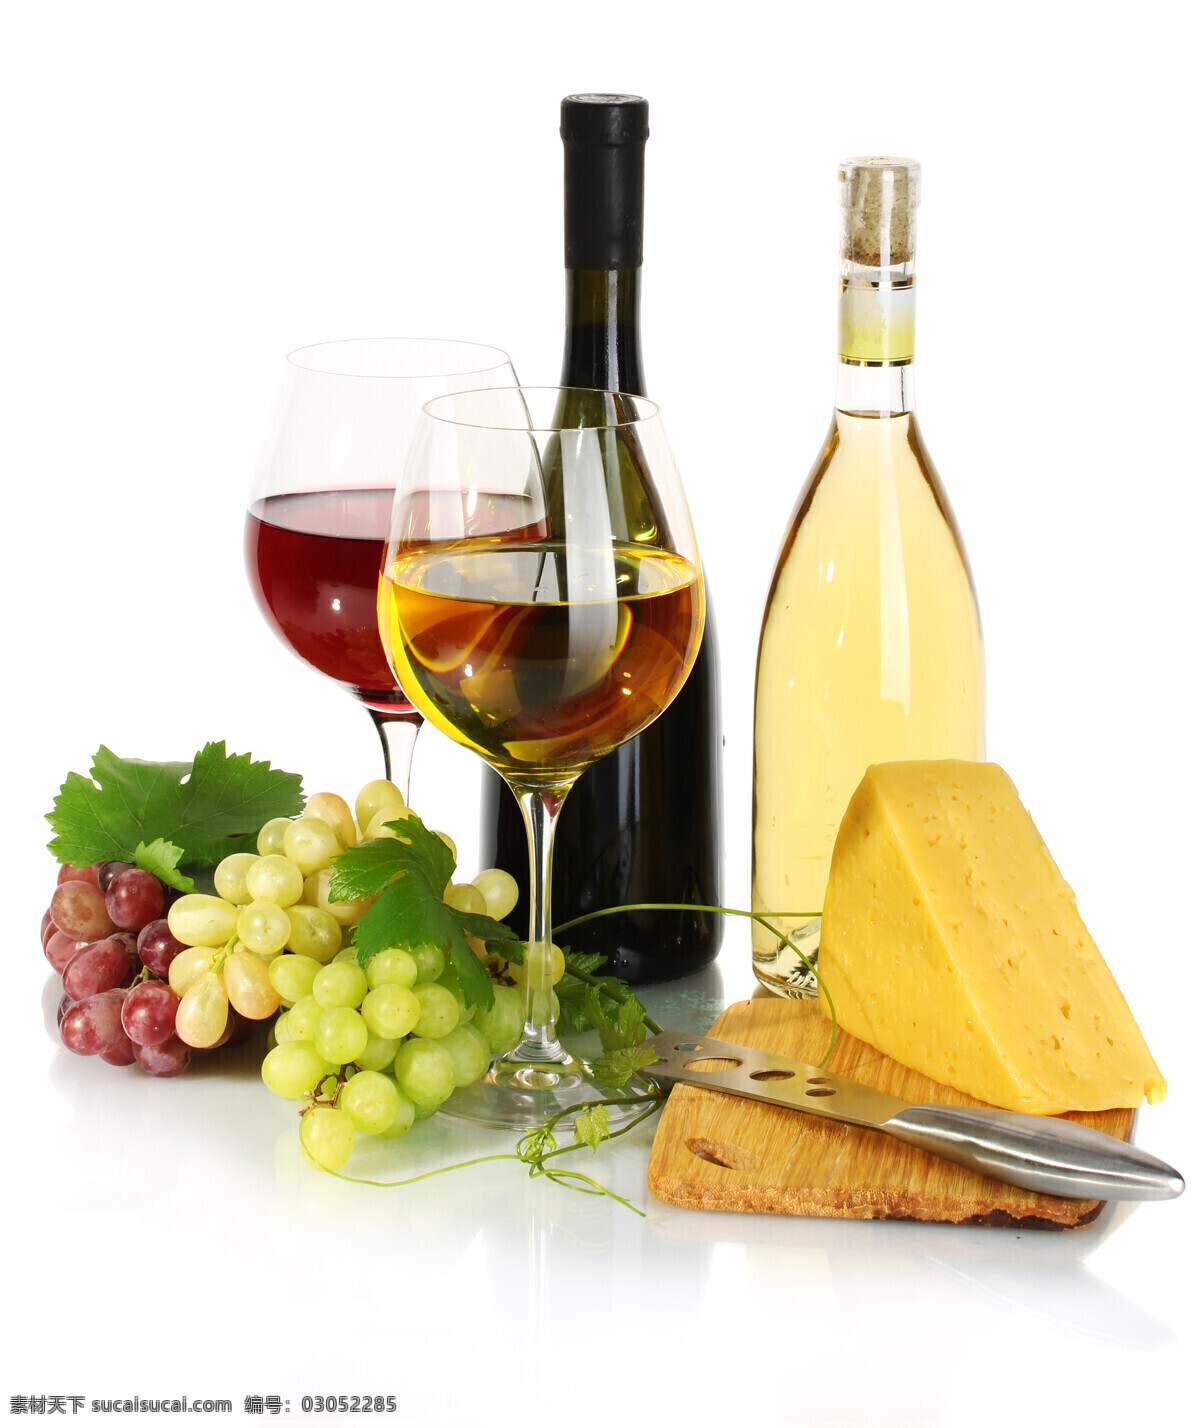 葡萄与美酒 葡萄 葡萄素材 葡萄摄影 红酒 酒杯 酒瓶 美食 面包 酒水饮料 餐饮美食 白色